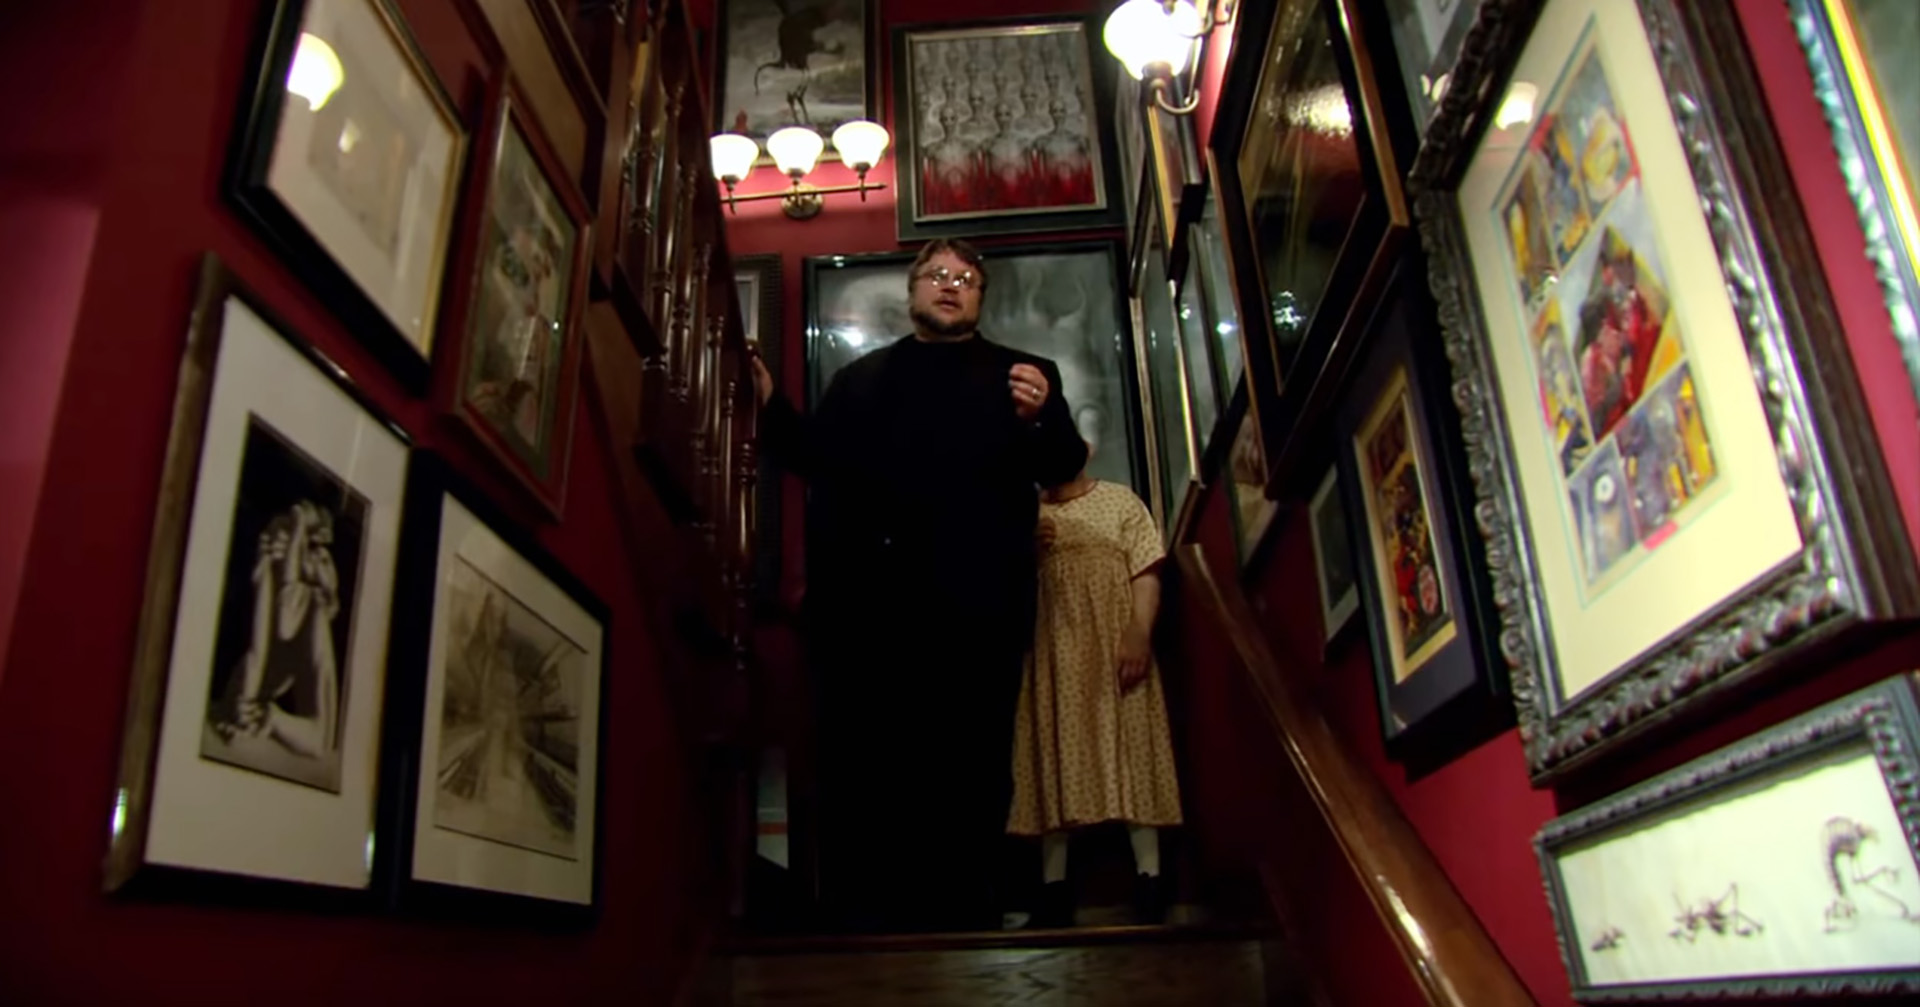 Guillermo del Toro en la escalera de su casa de Los Angeles, en cuyas paredes están colgados originales de Enrique Breccia